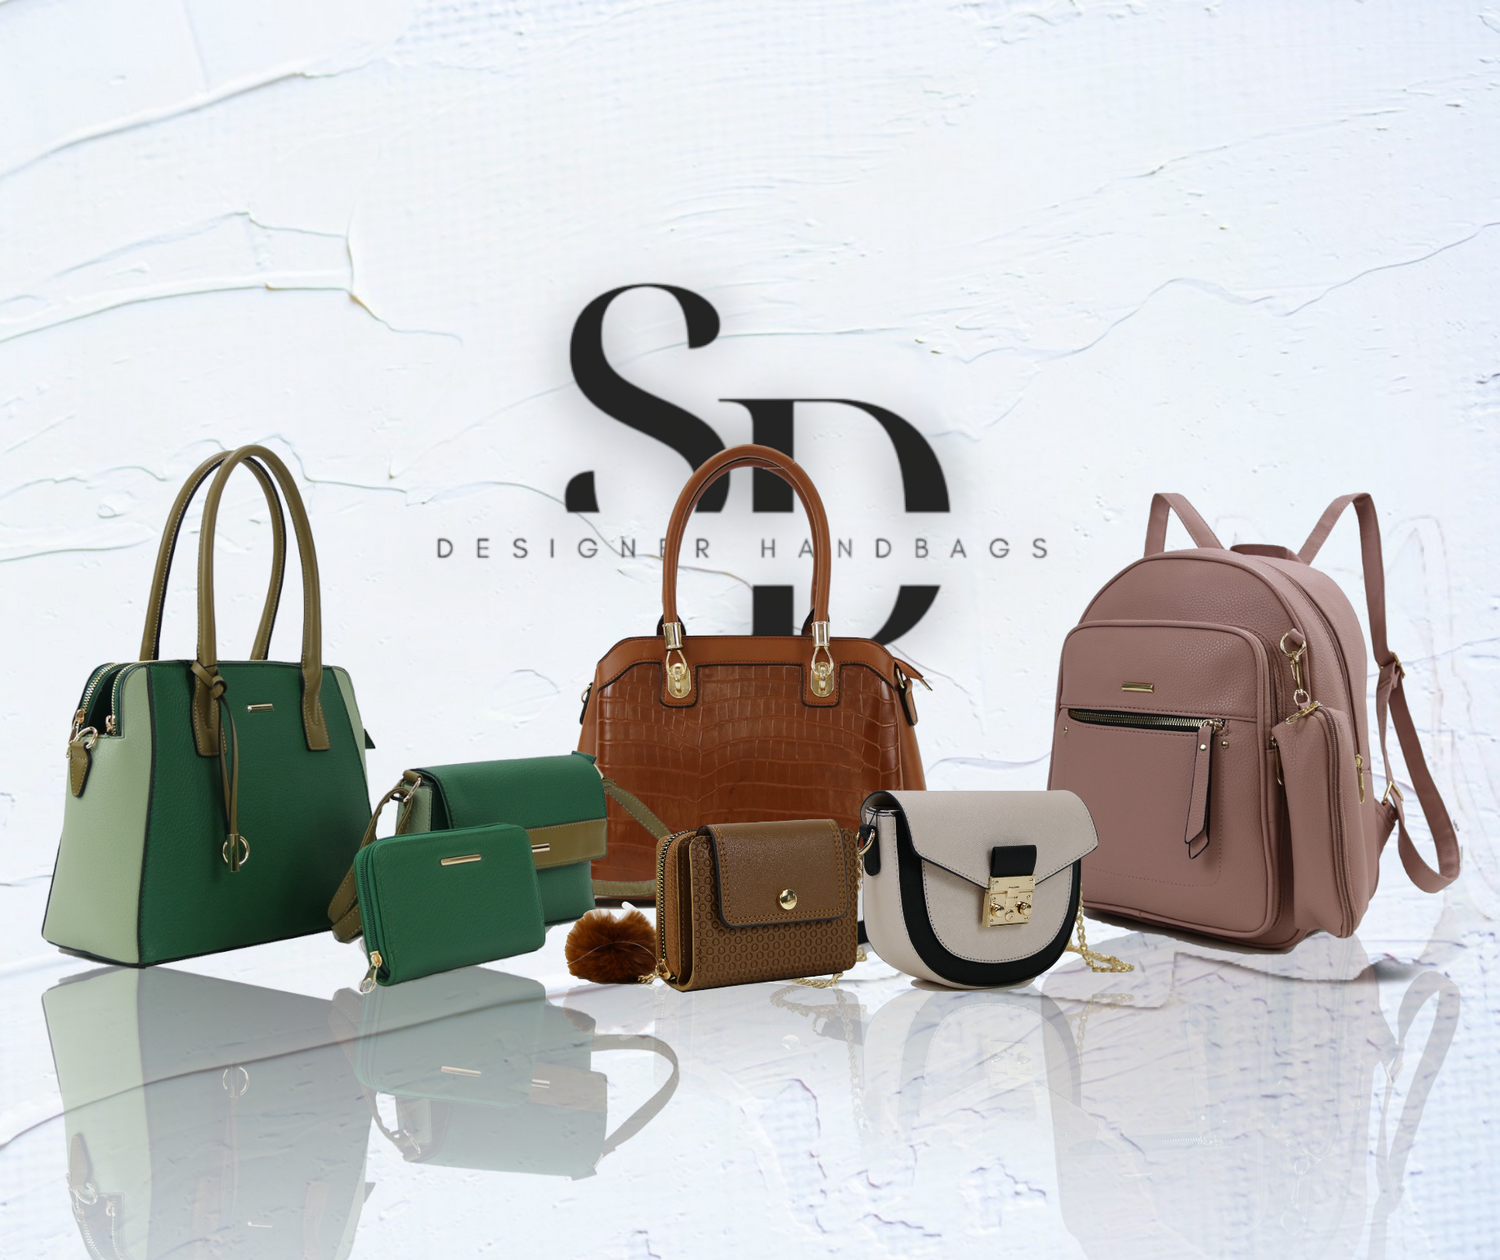 SD Designer Handbags